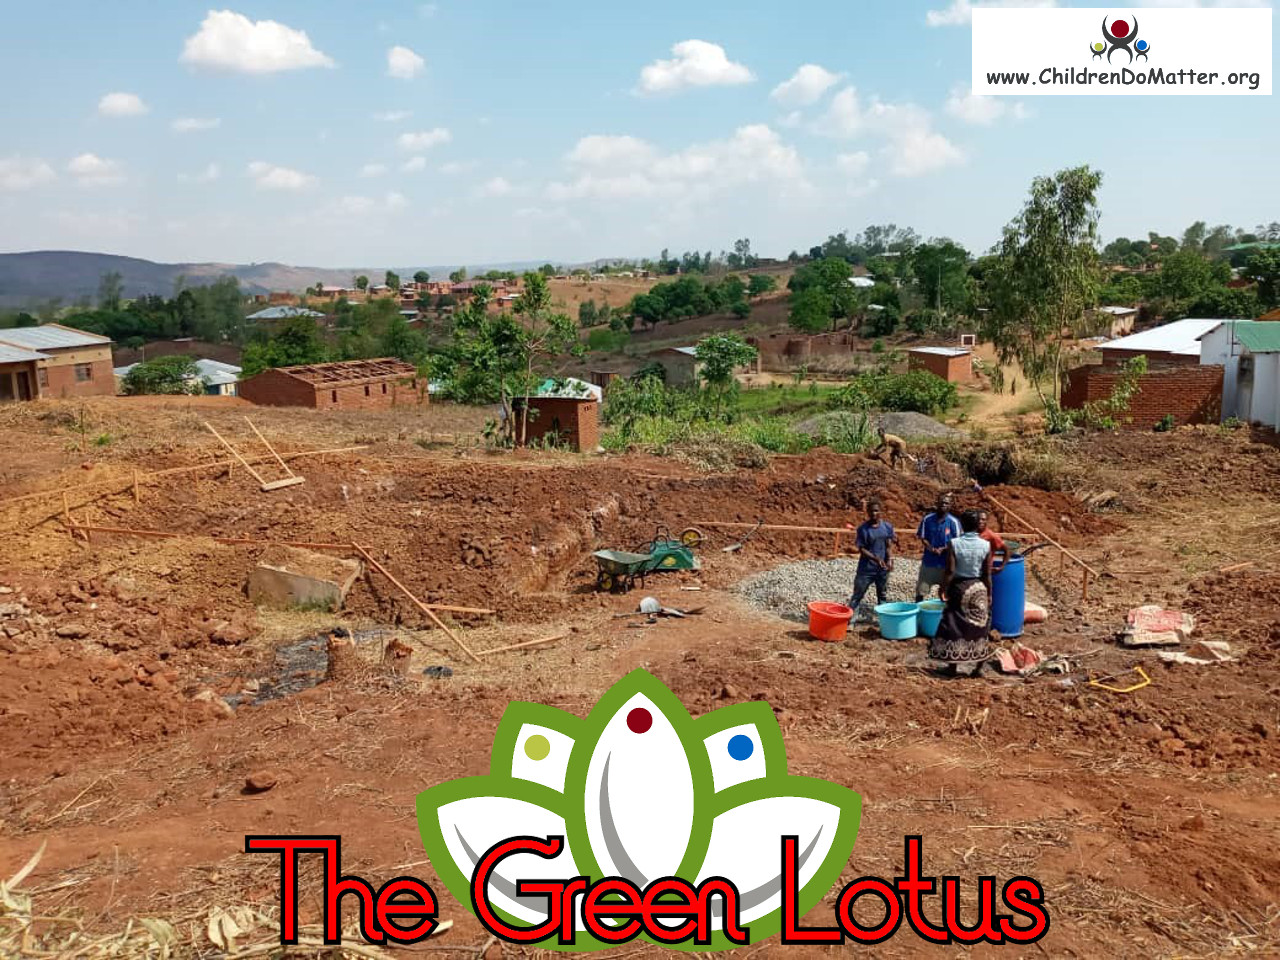 costruzione dell'orfanotrofio casa di accoglienza the green lotus a blantyre malawi - children do matter - 1